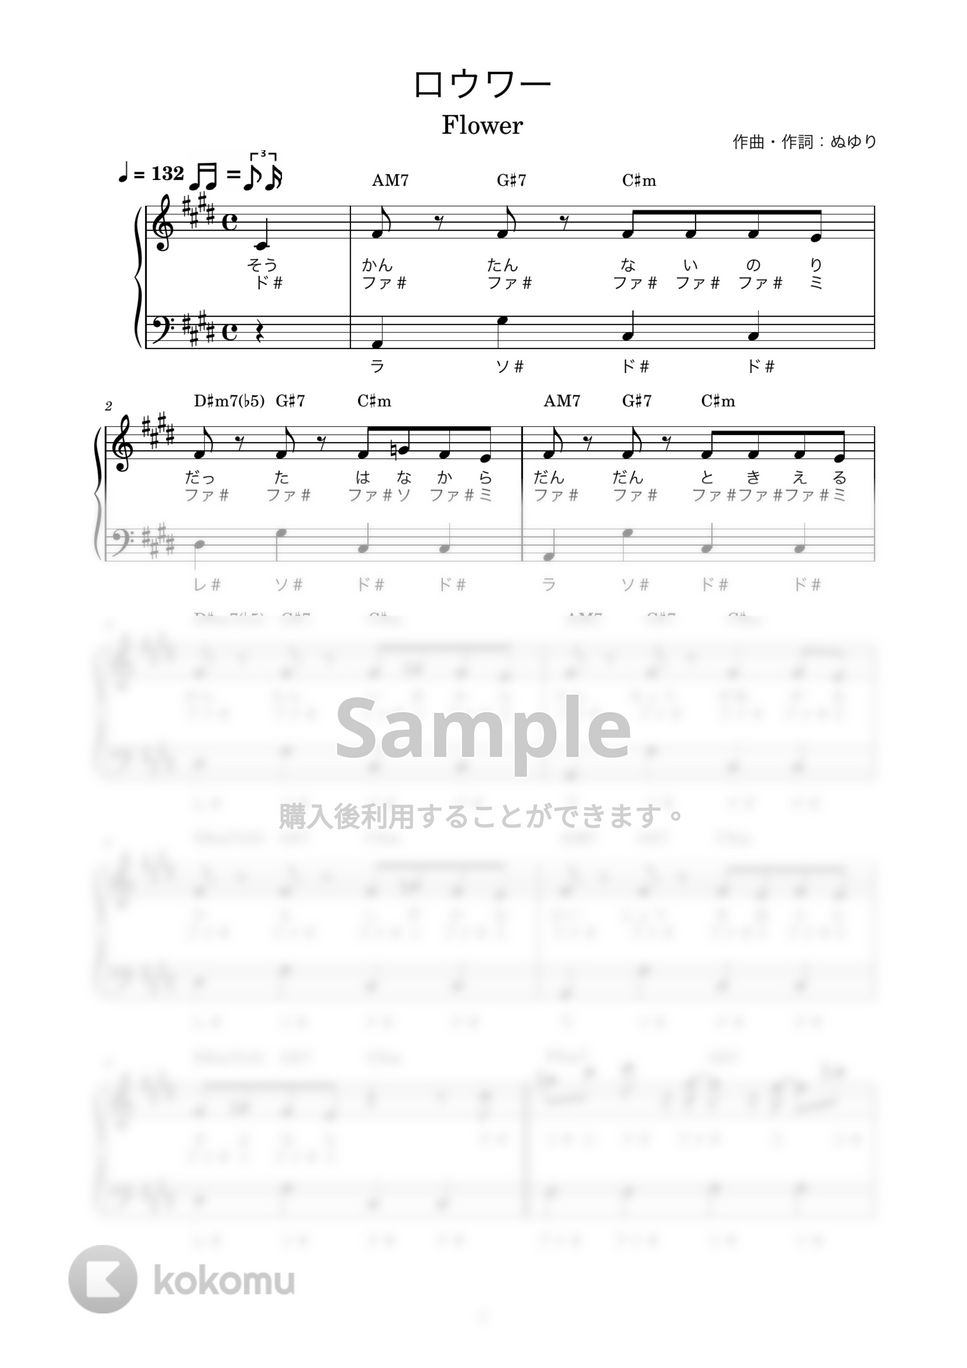 ぬゆり feat. Flower - ロウワー (かんたん / 歌詞付き / ドレミ付き / 初心者) by piano.tokyo